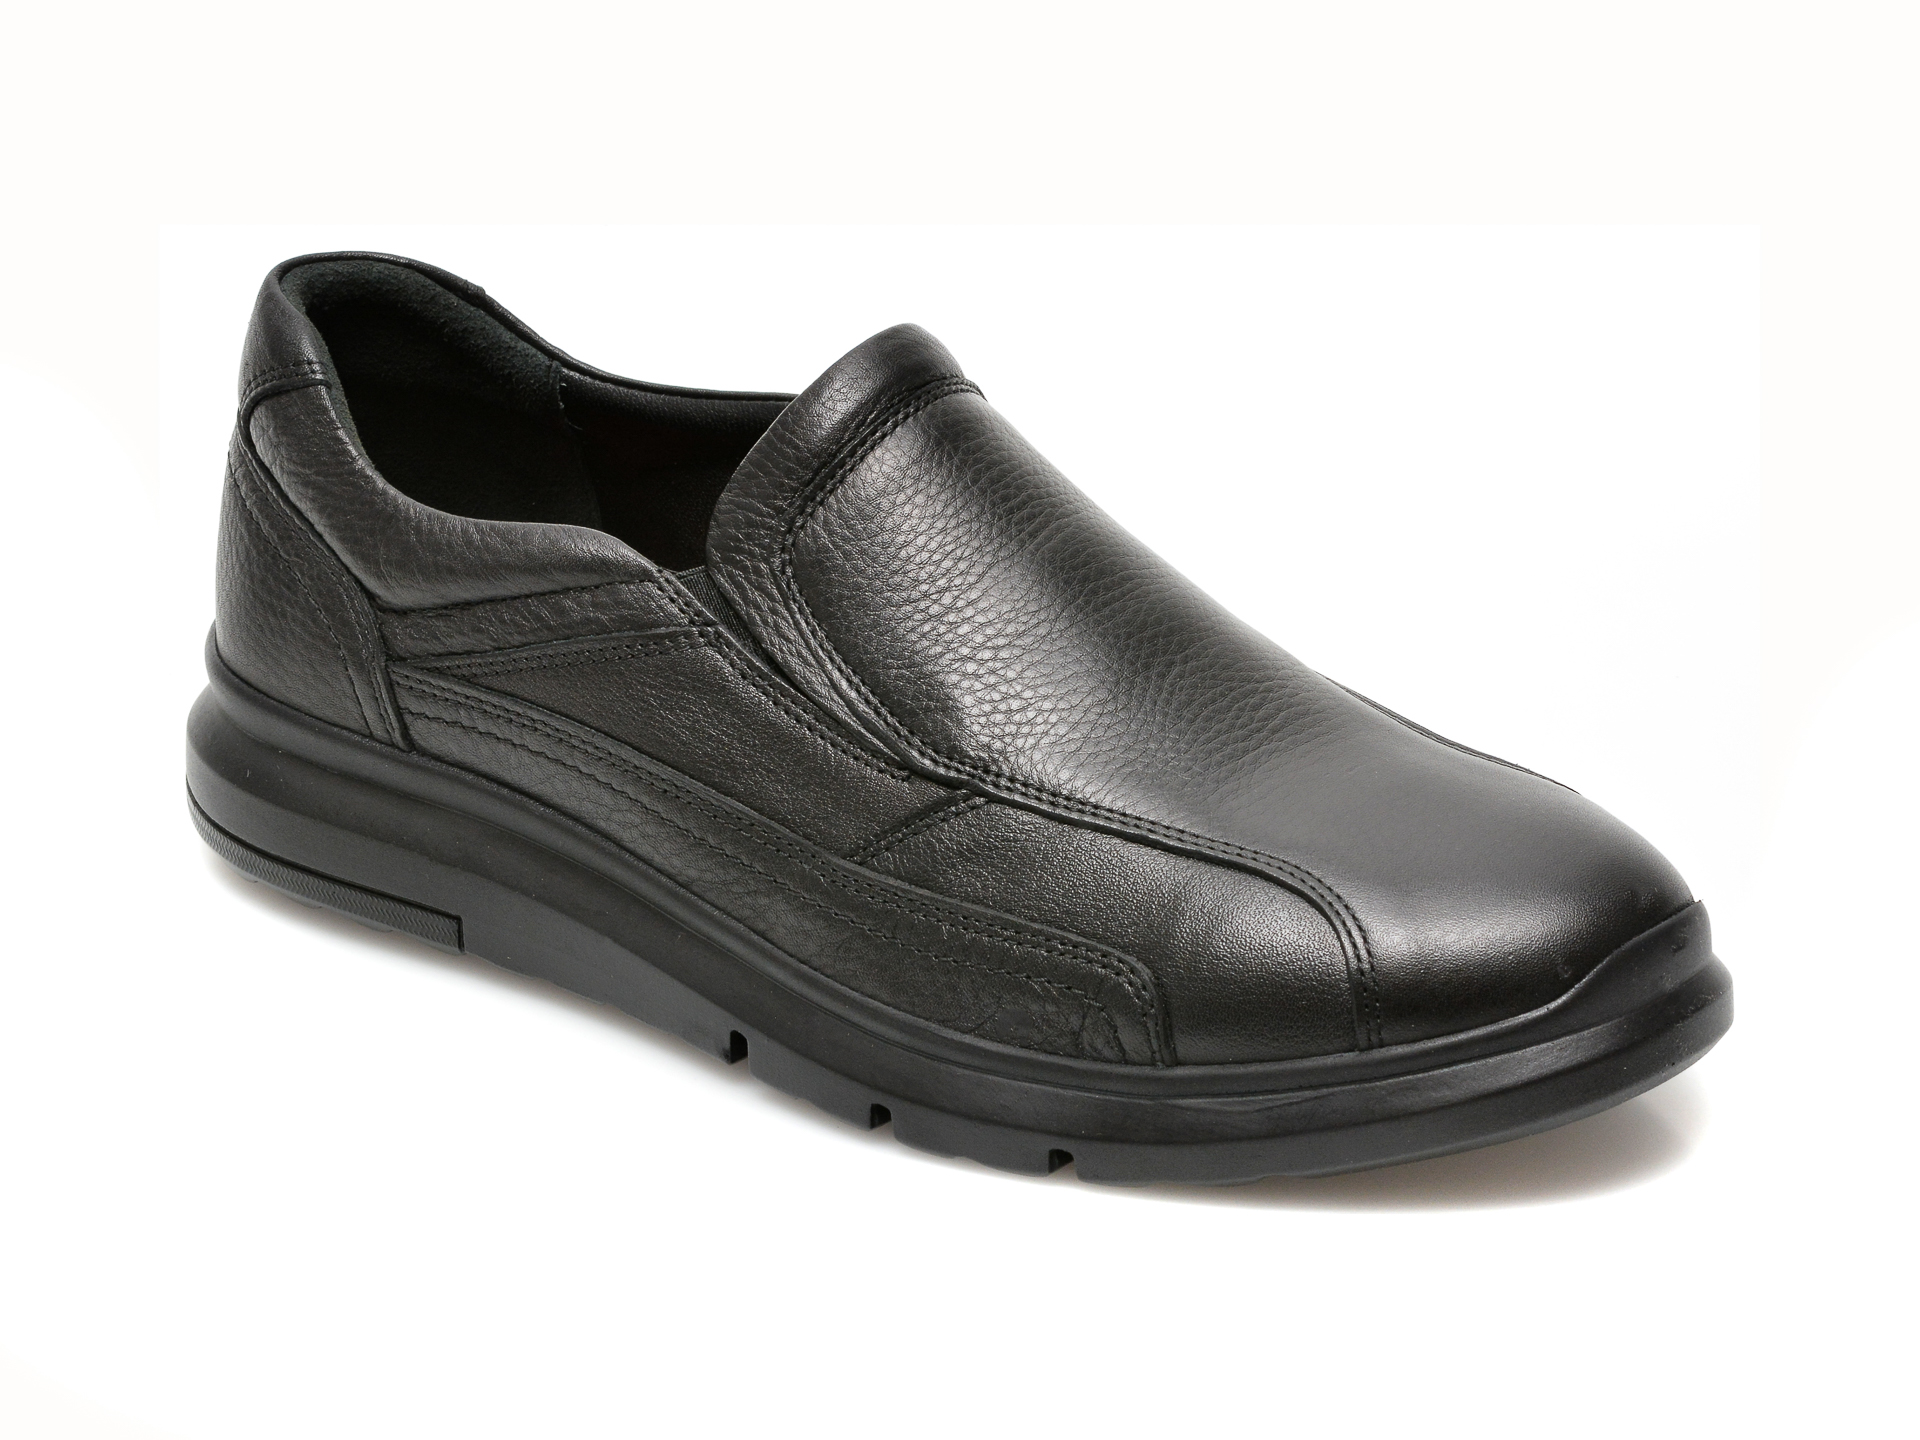 Pantofi OTTER negri, TTP41, din piele naturala Otter poza reduceri 2021